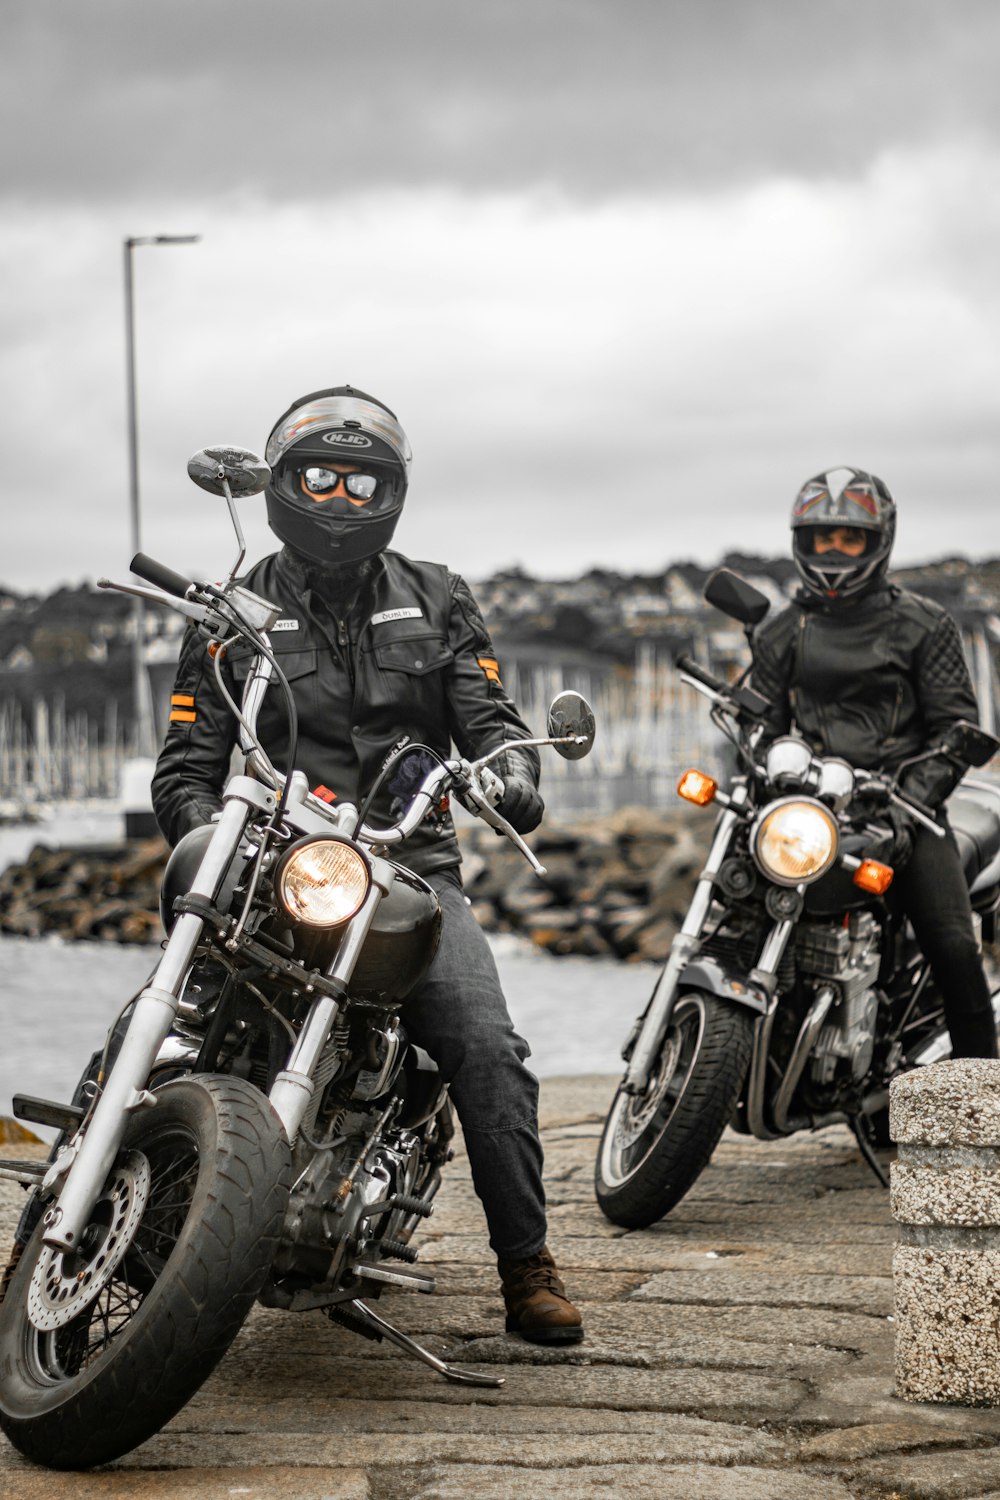 man in black helmet riding black motorcycle